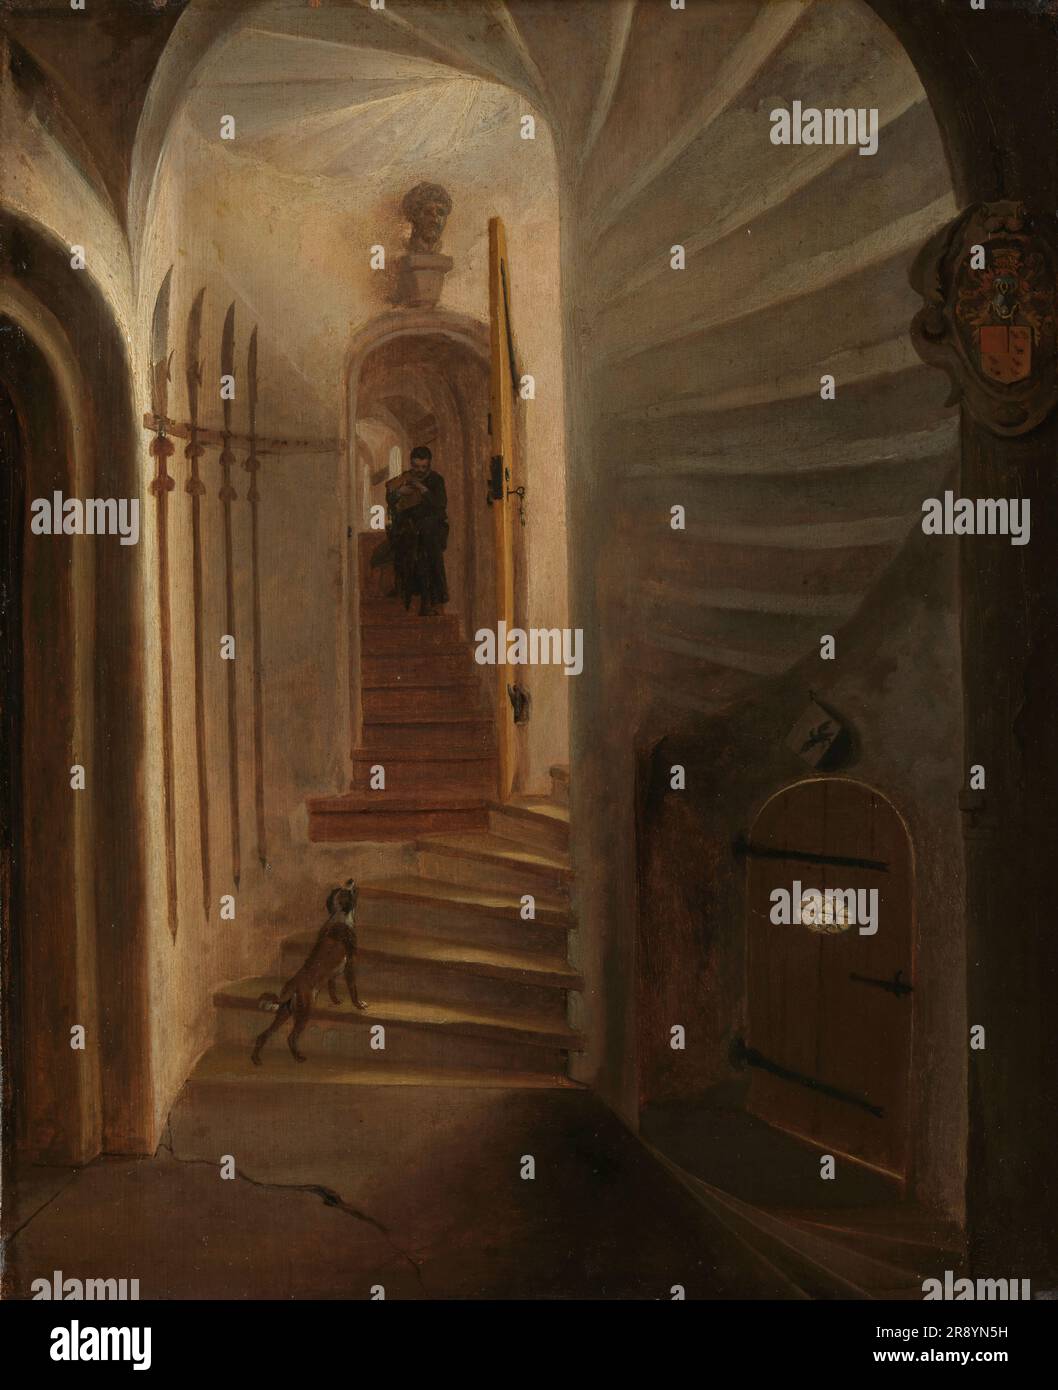 Portail d'une tour d'escalier, avec un homme descendant les escaliers: Probablement le moment avant l'assassinat de William le Silent dans le Ptinsenhof, Delft, 1640-1664. Attribué à Egbert Lievensz. Van der Poel. Banque D'Images